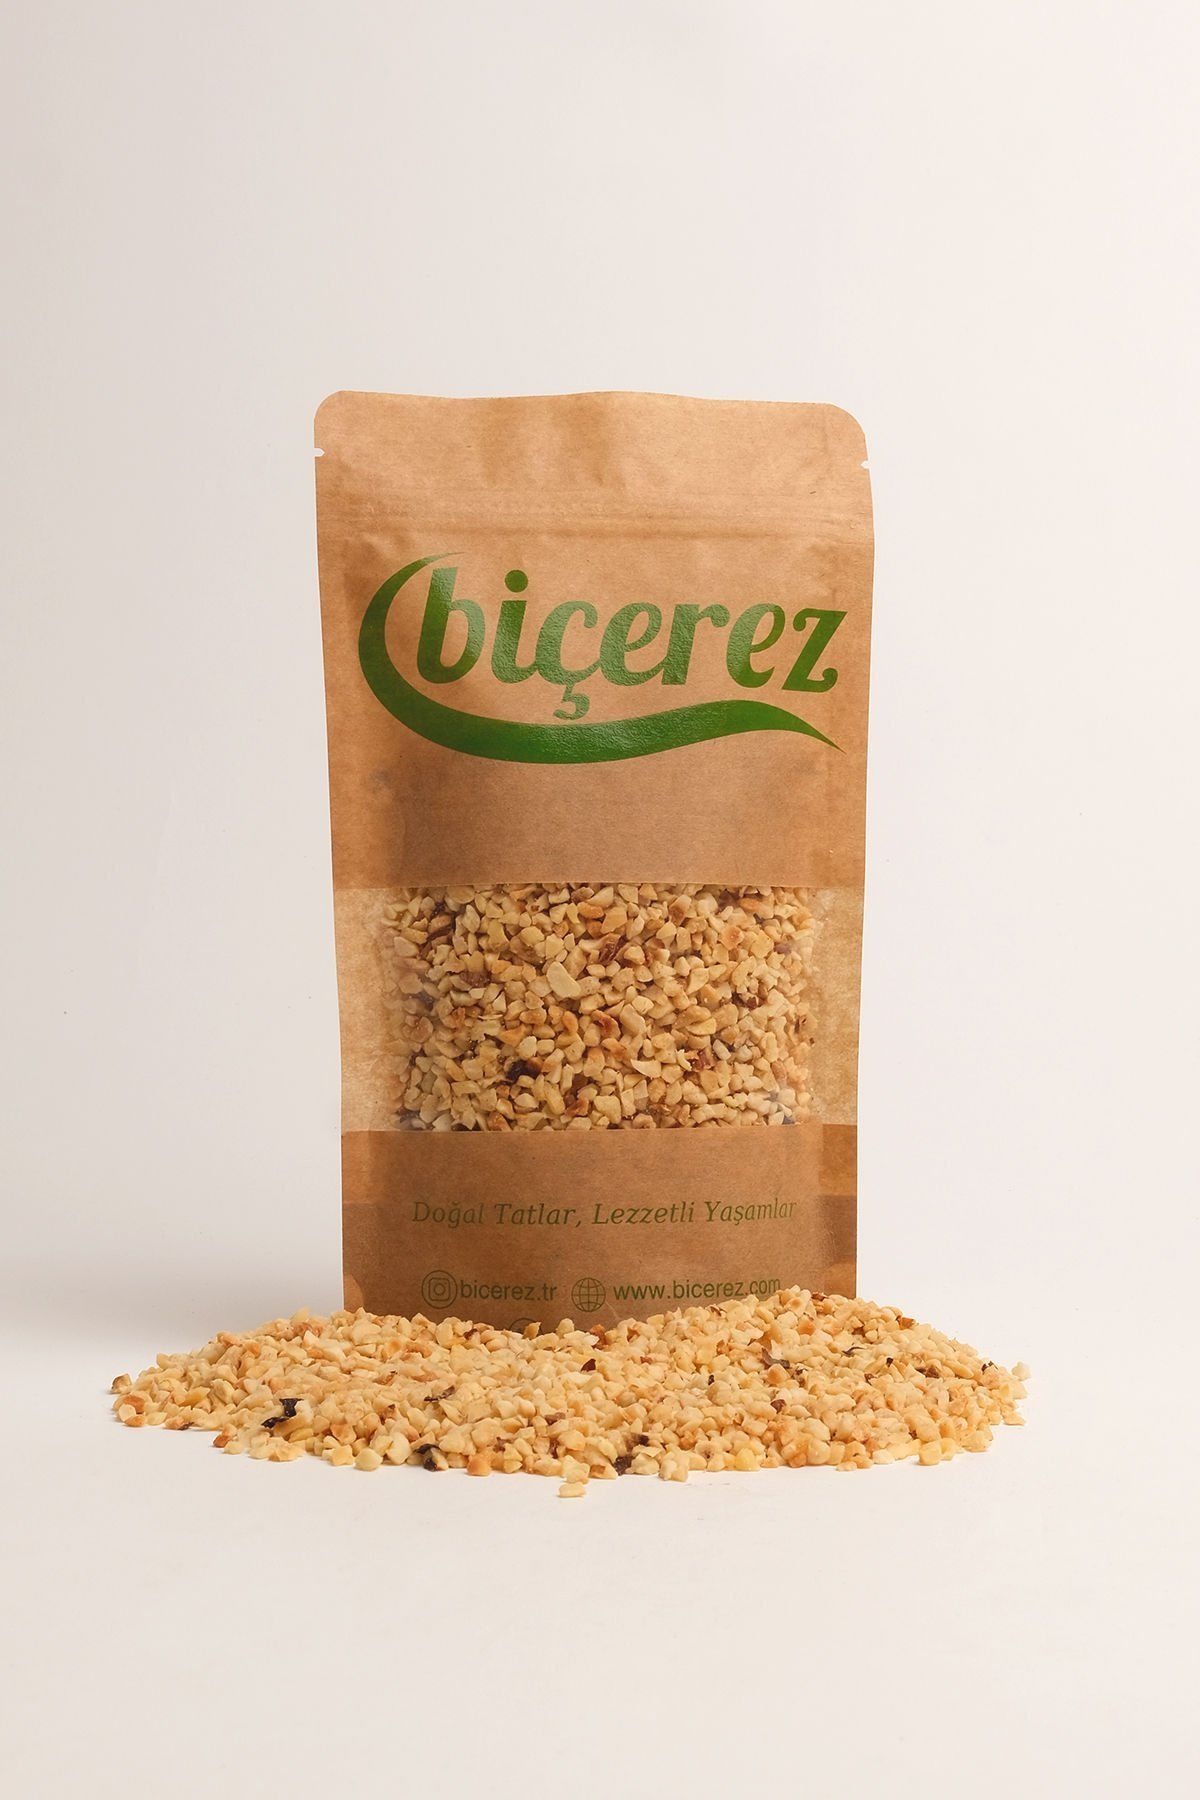 Premium Fındık Pirinç Vakumlu Taze Pakette Lezzetli ve Besleyici 500 gr